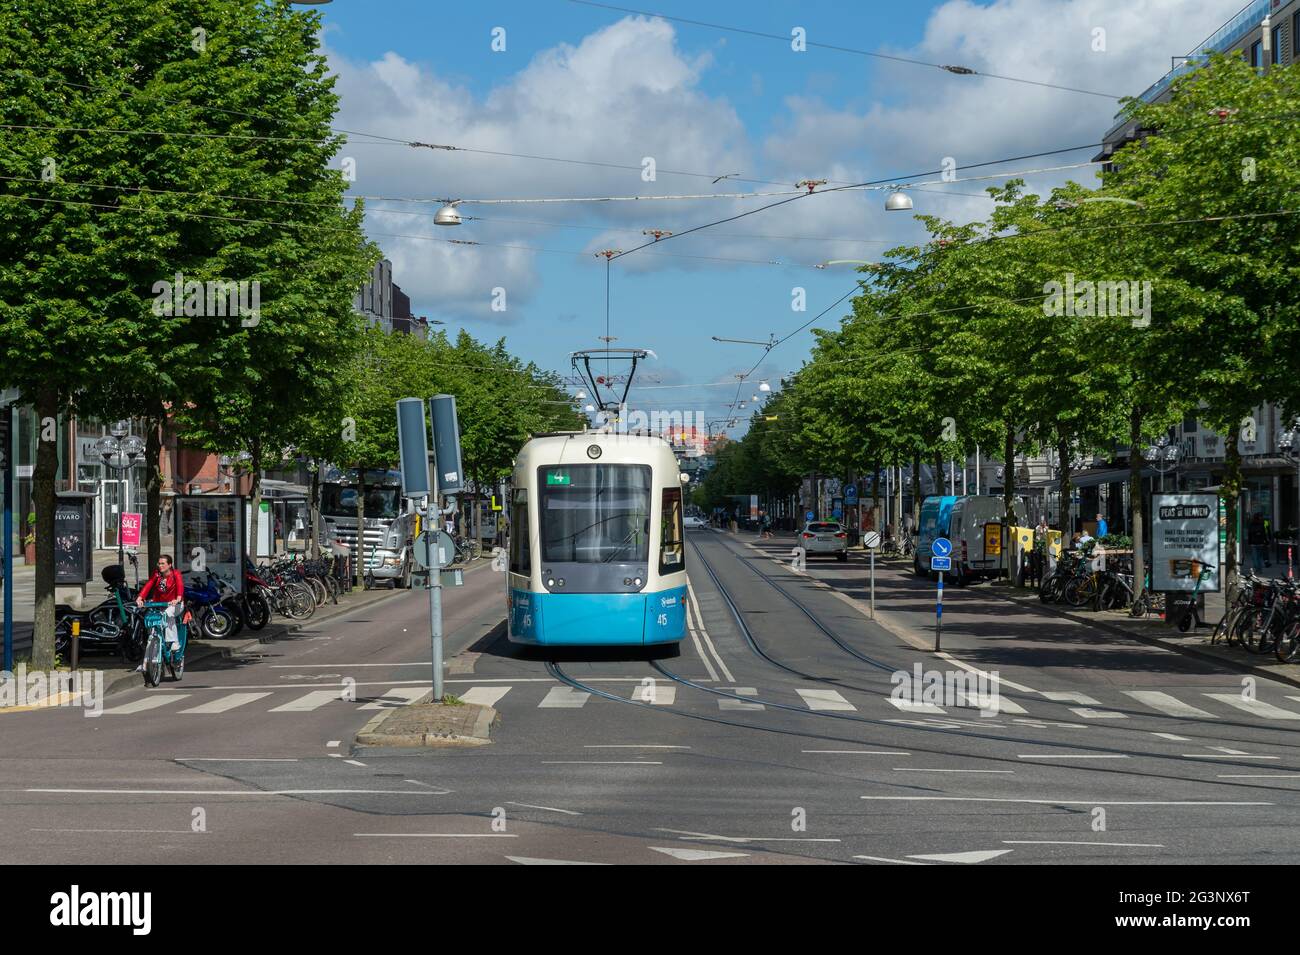 GOTEBORG, SVEZIA - 16 giugno 2021: Un tram blu nel centro della città. Una delle caratteristiche più famose di Goteborg. Un modo comodo per viaggiare Foto Stock